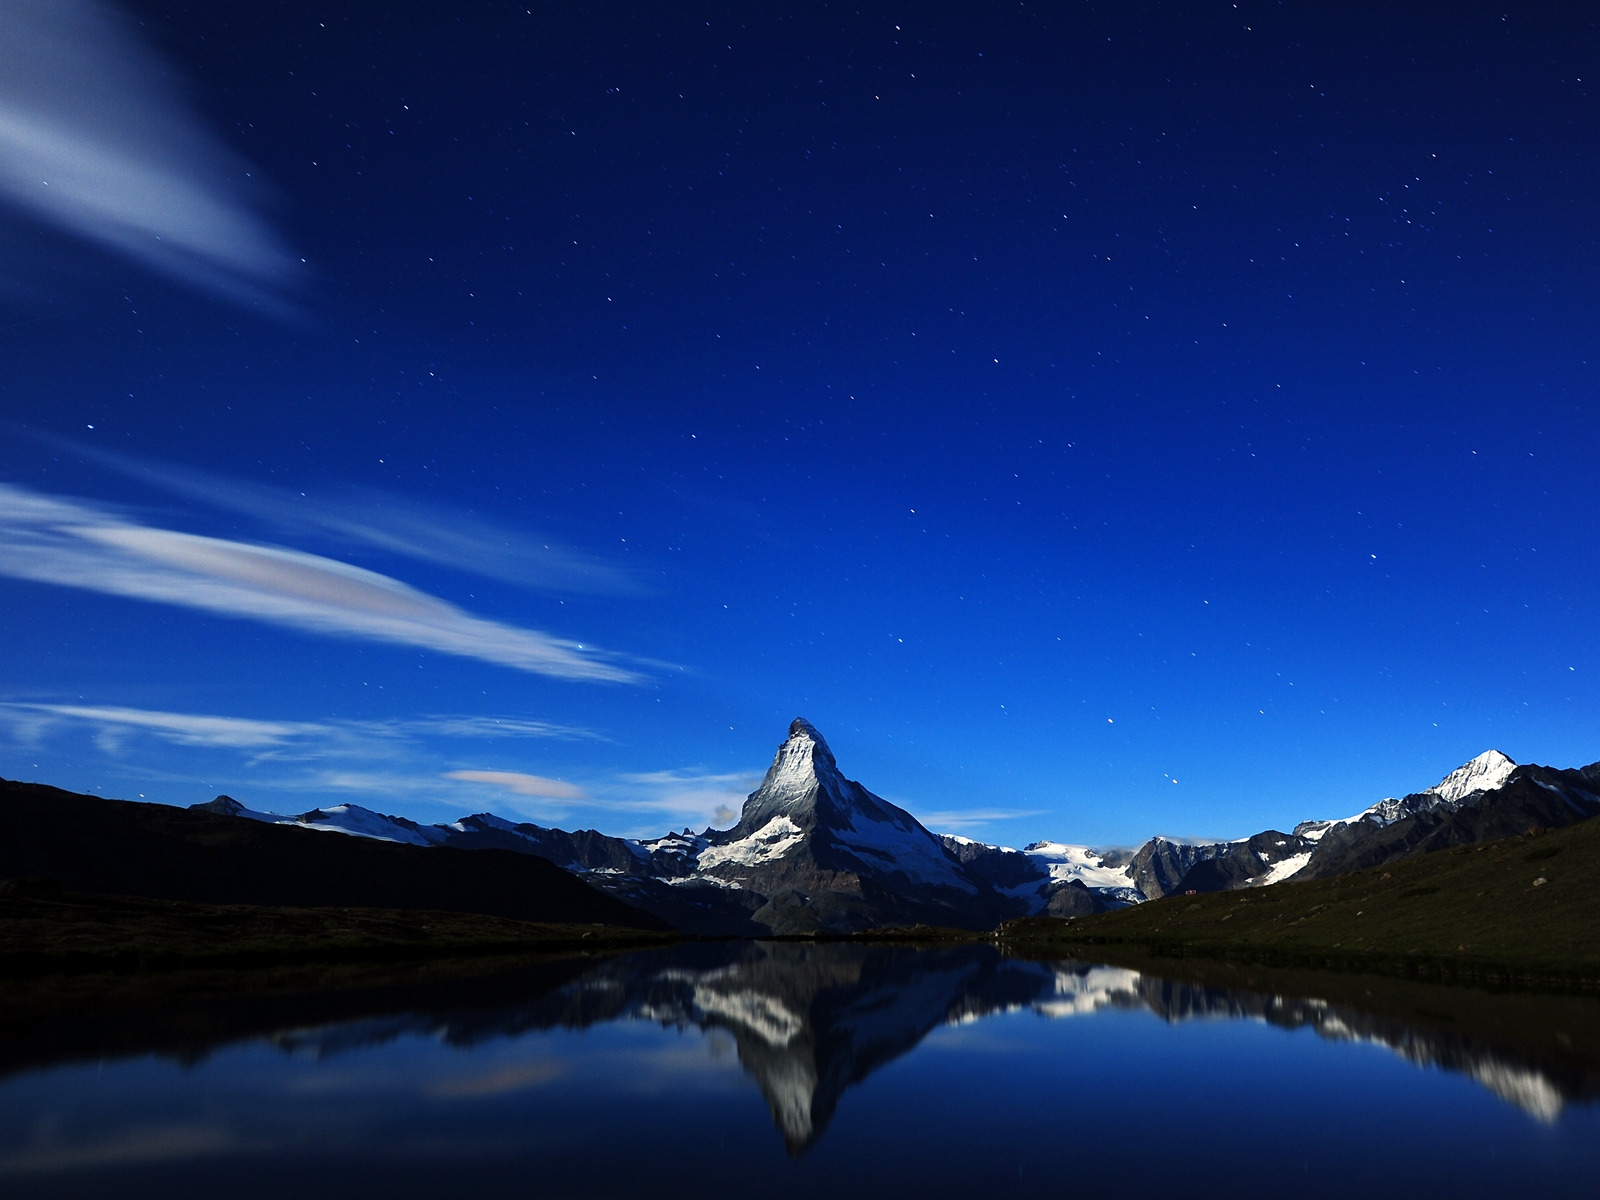 Matterhorn Midnight Reflection for 1600 x 1200 resolution